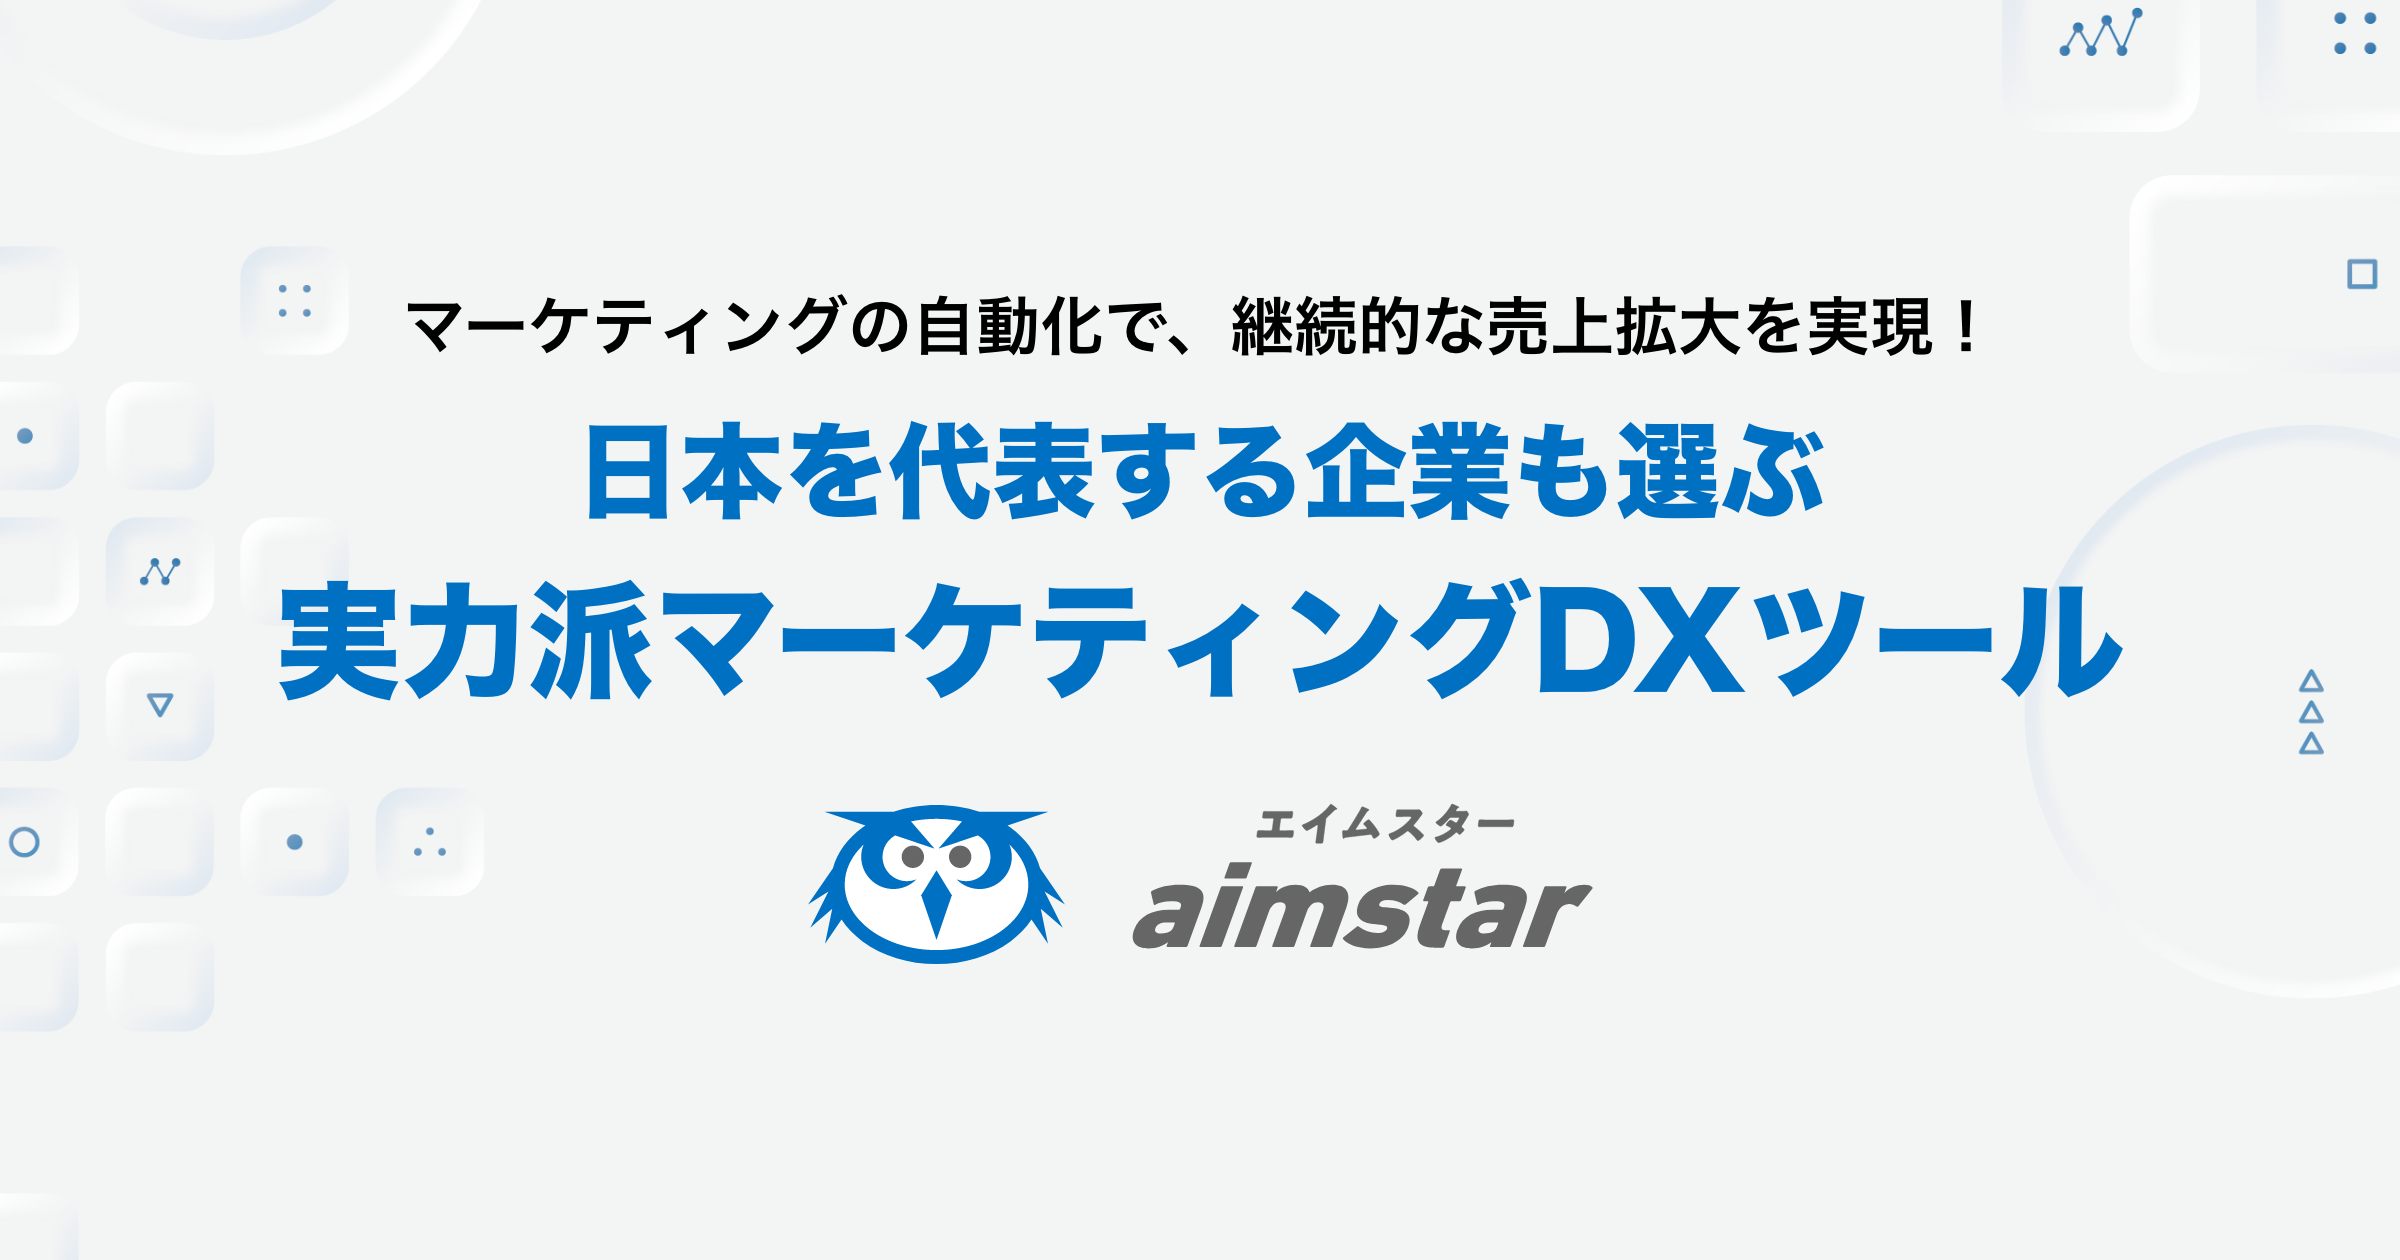 aimstar【スプリームシステム】 - エンゲージメント・データ・プラットフォーム